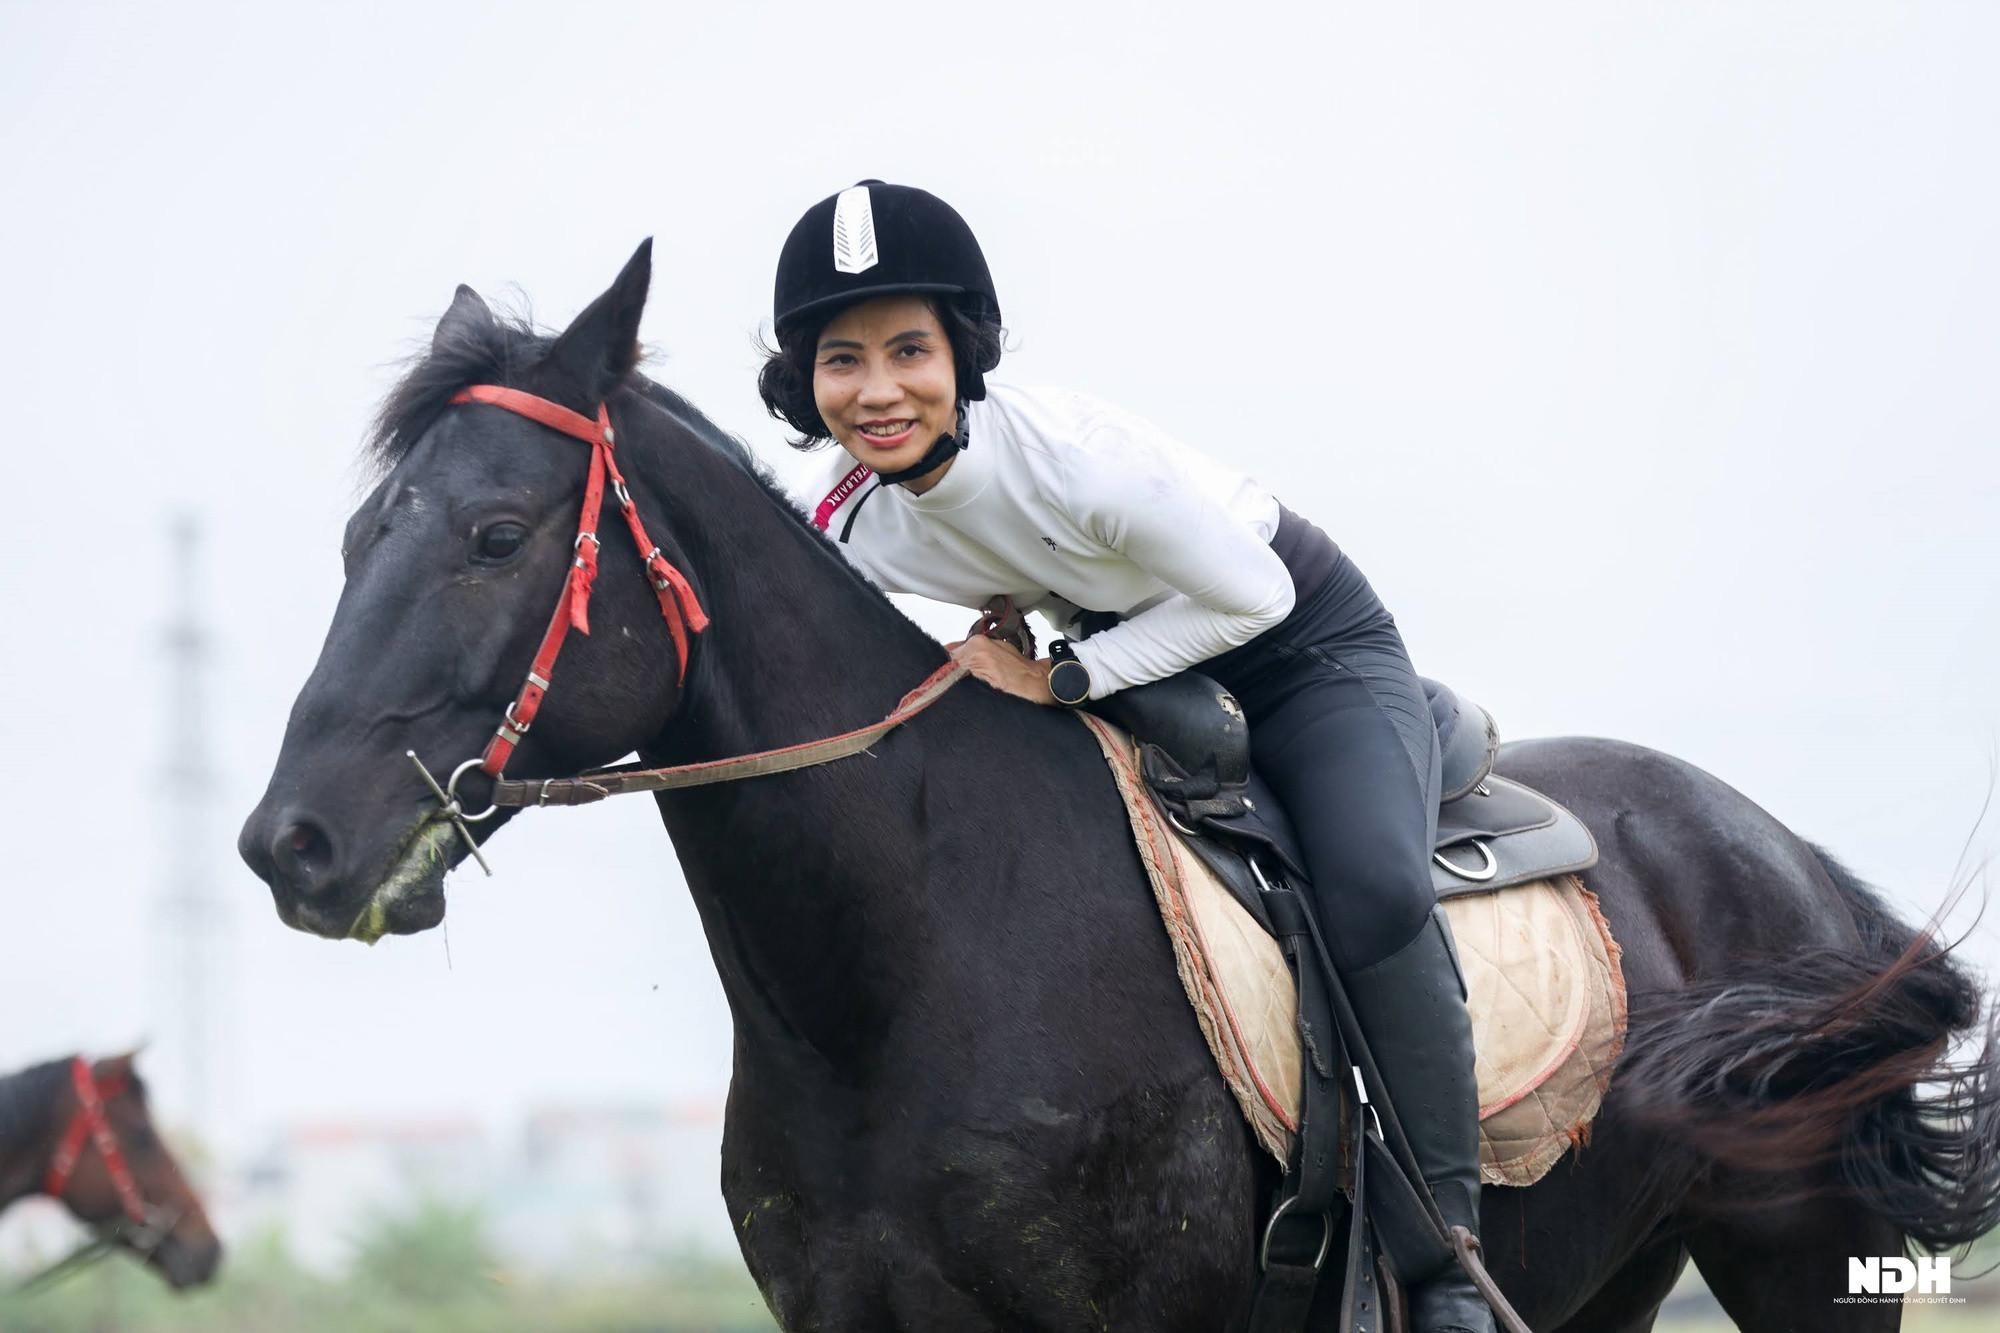 Người Hà Nội chi tiền triệu học cưỡi ngựa phong cách châu Âu - Ảnh 1.